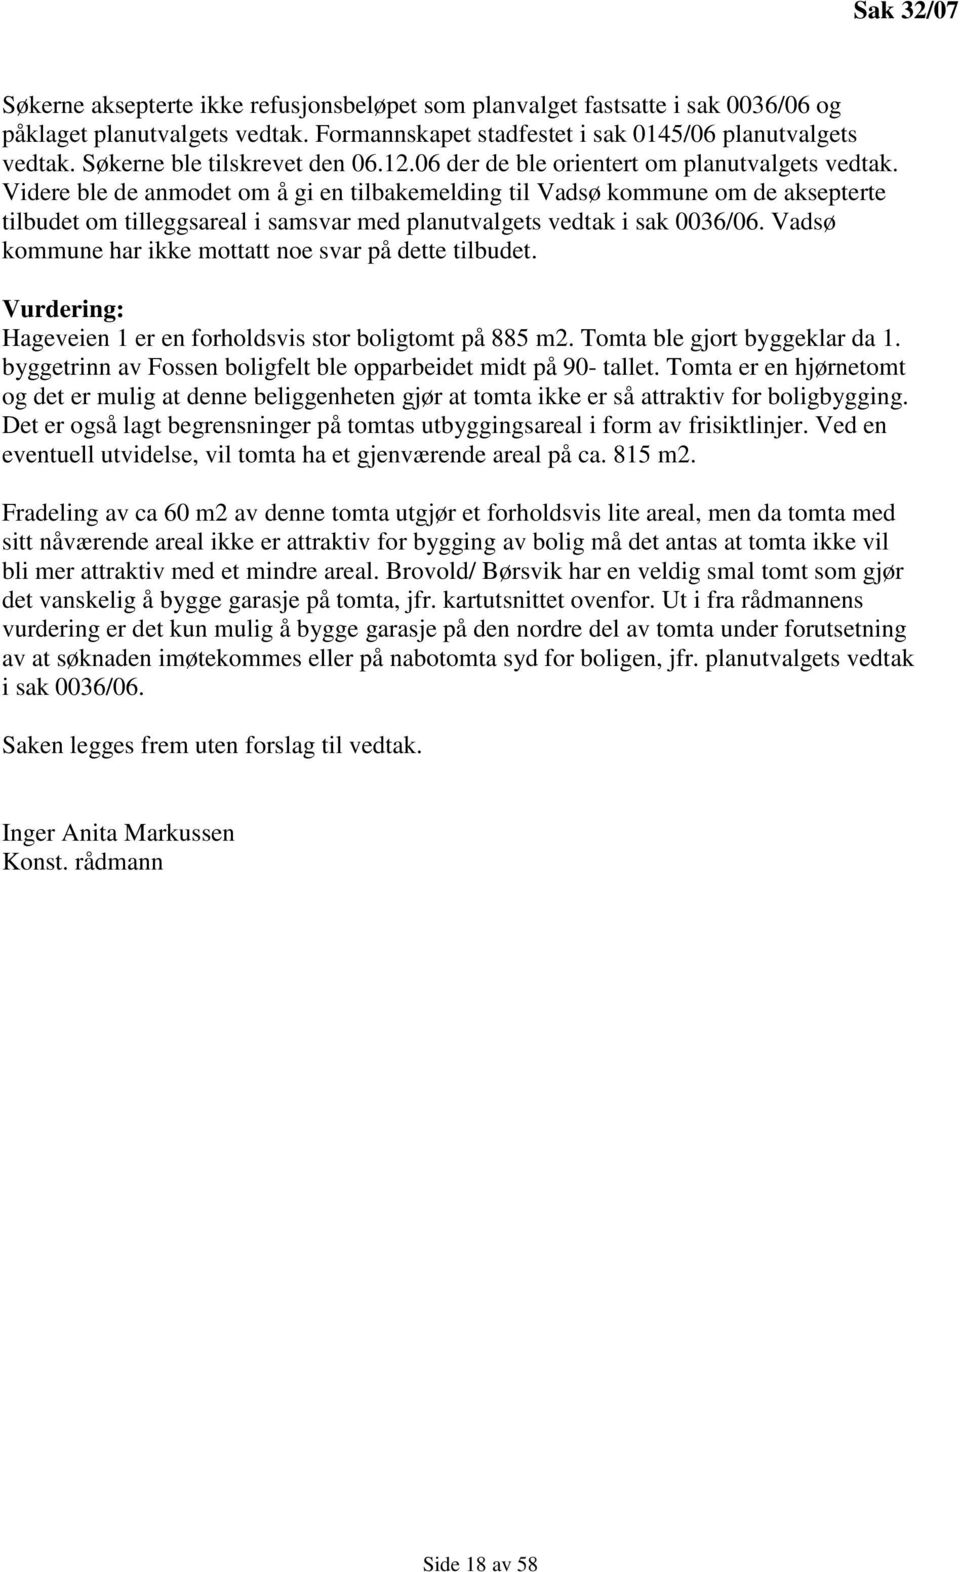 Videre ble de anmodet om å gi en tilbakemelding til Vadsø kommune om de aksepterte tilbudet om tilleggsareal i samsvar med planutvalgets vedtak i sak 0036/06.